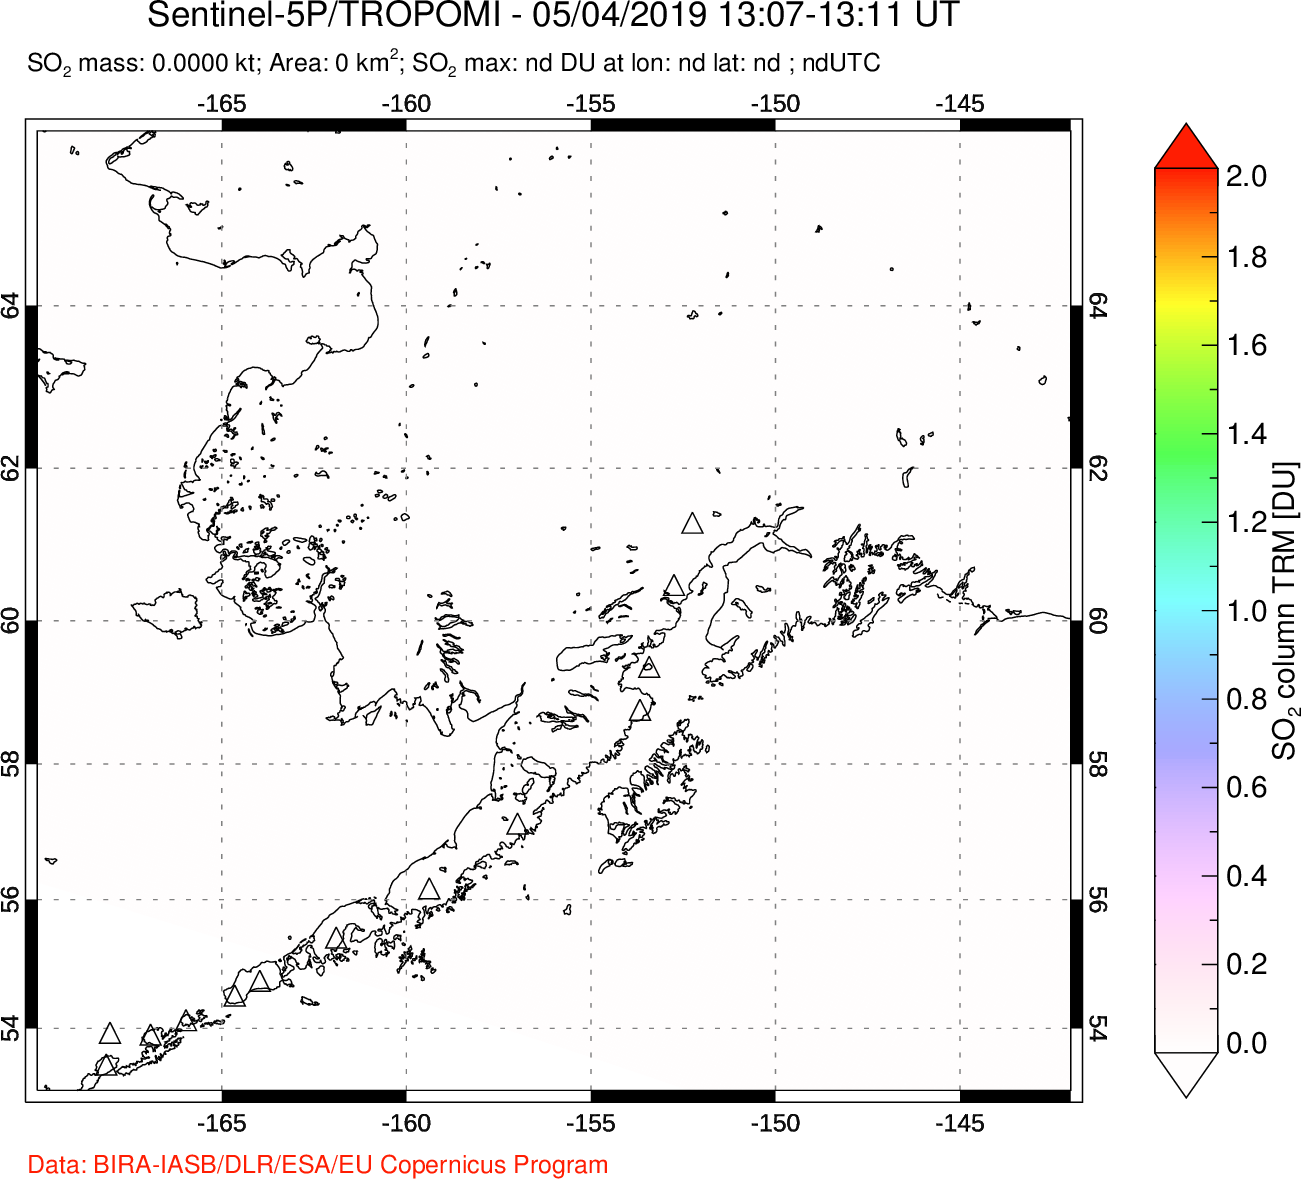 A sulfur dioxide image over Alaska, USA on May 04, 2019.